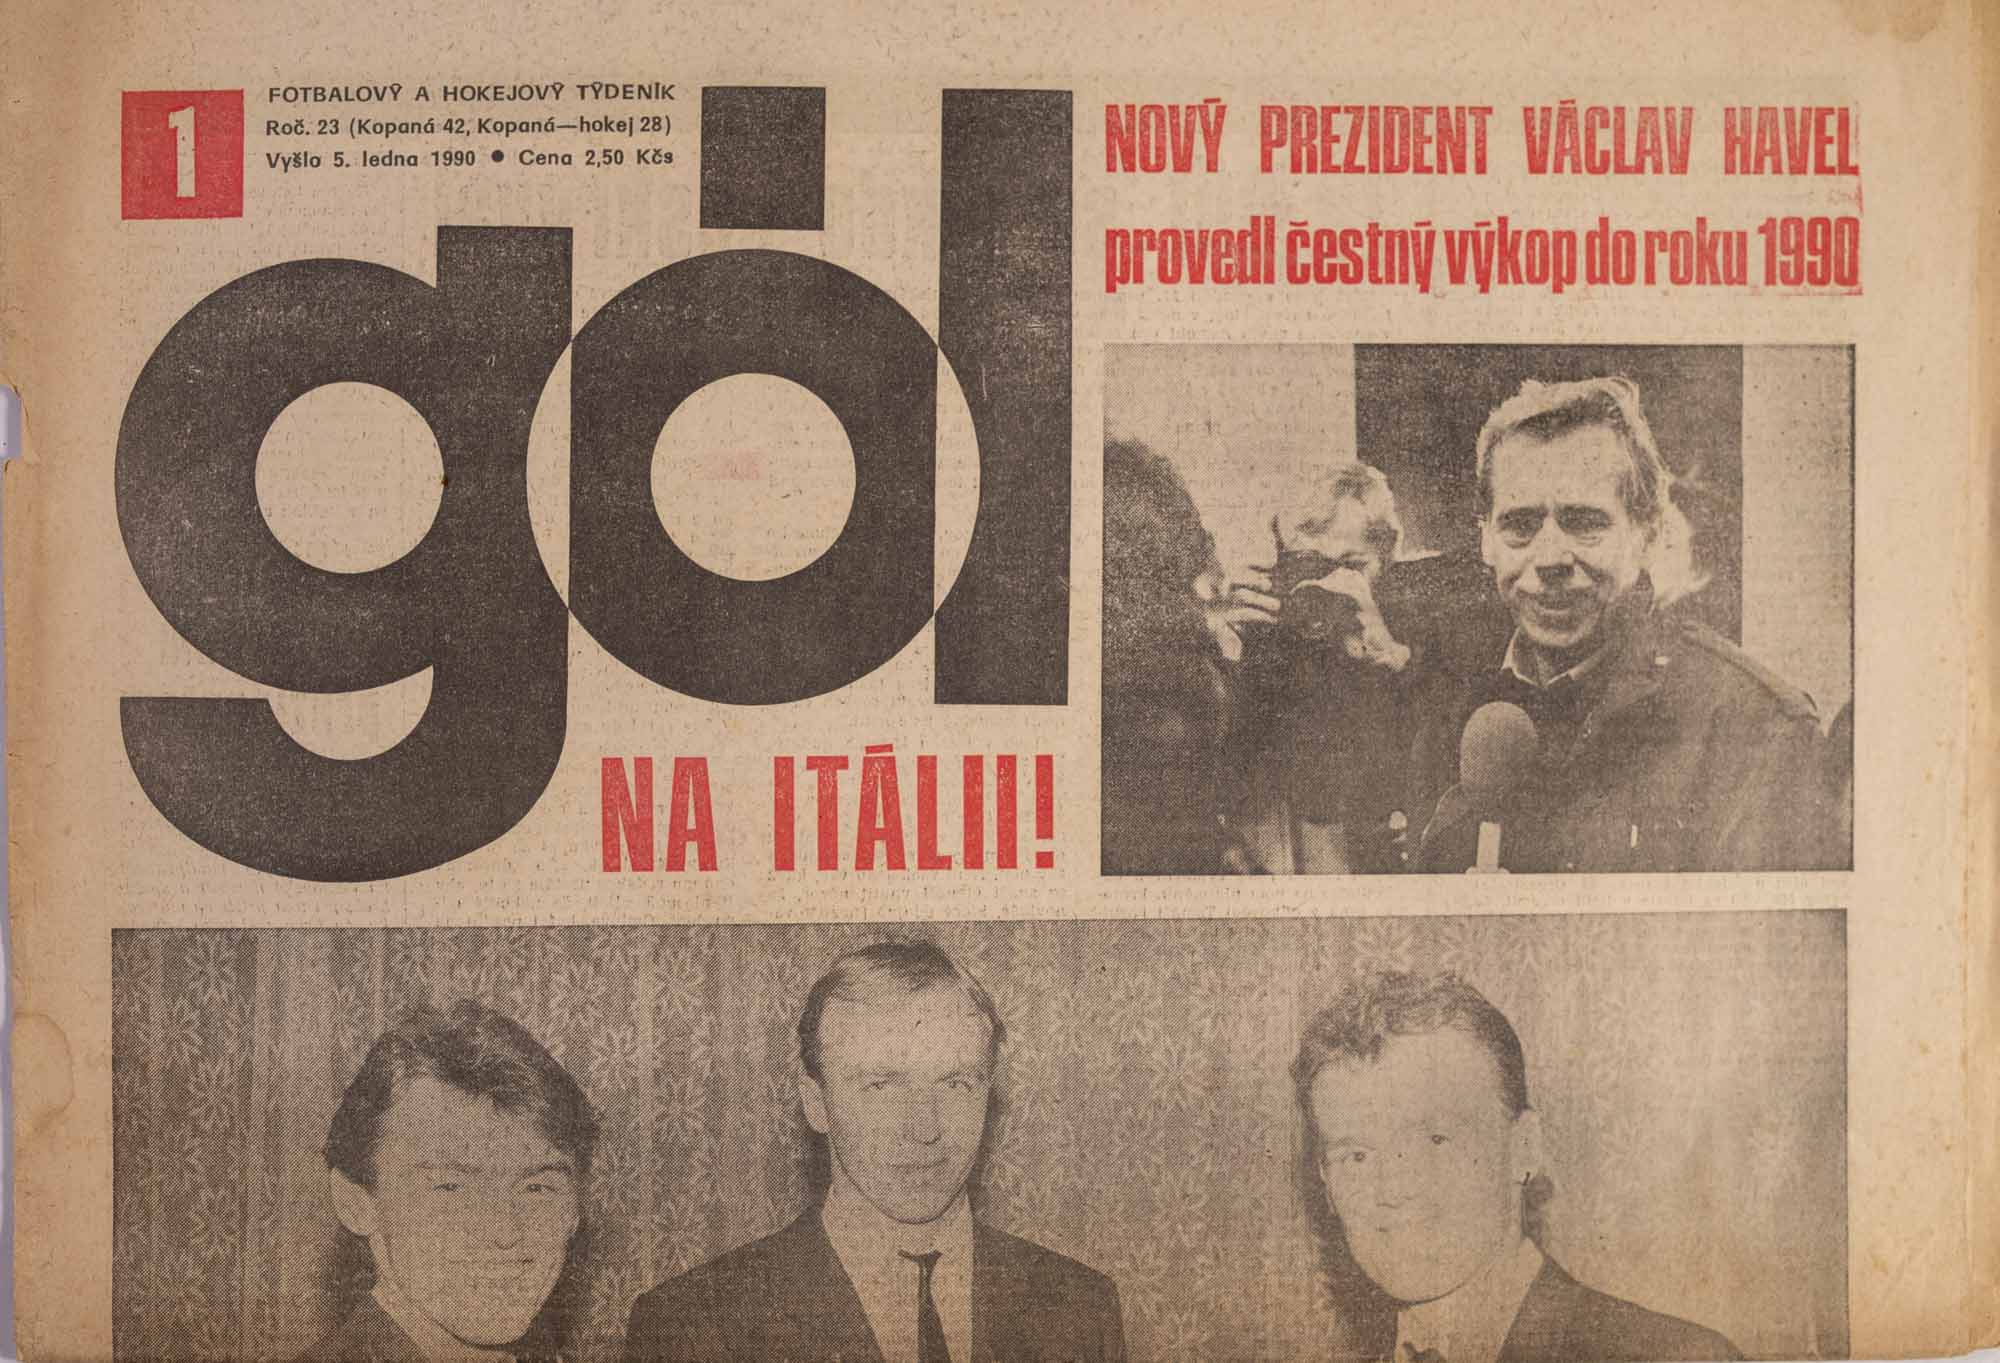 GÓL. Fotbalový a hokejový týdeník, 23/42/28/1990 č. 1